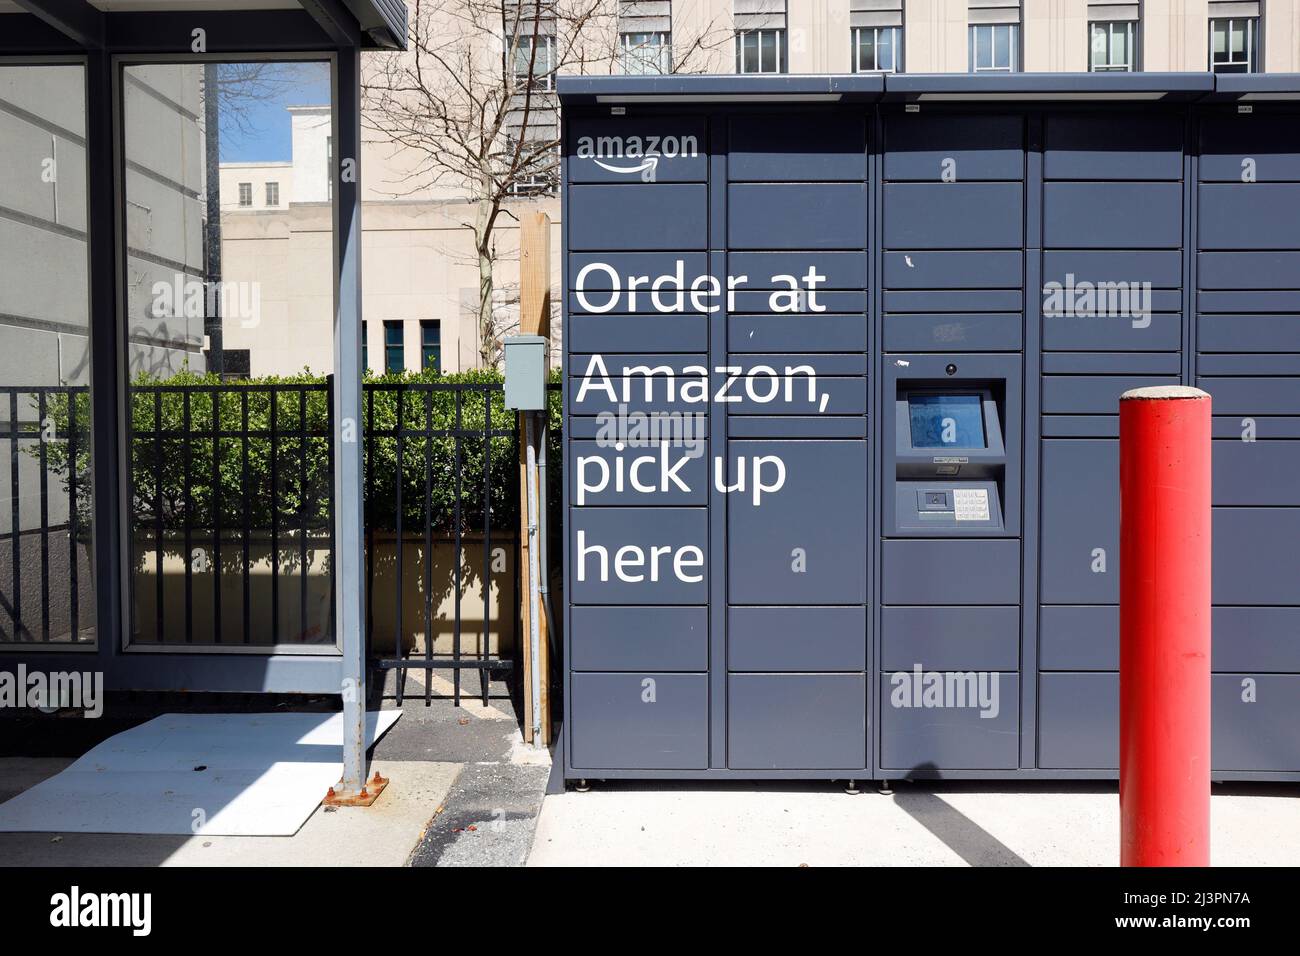 Un armario Amazon Hub Locker automatizado y de autoservicio. Los armarios de amazon almacenan las entregas que los clientes recogen a su conveniencia. Foto de stock